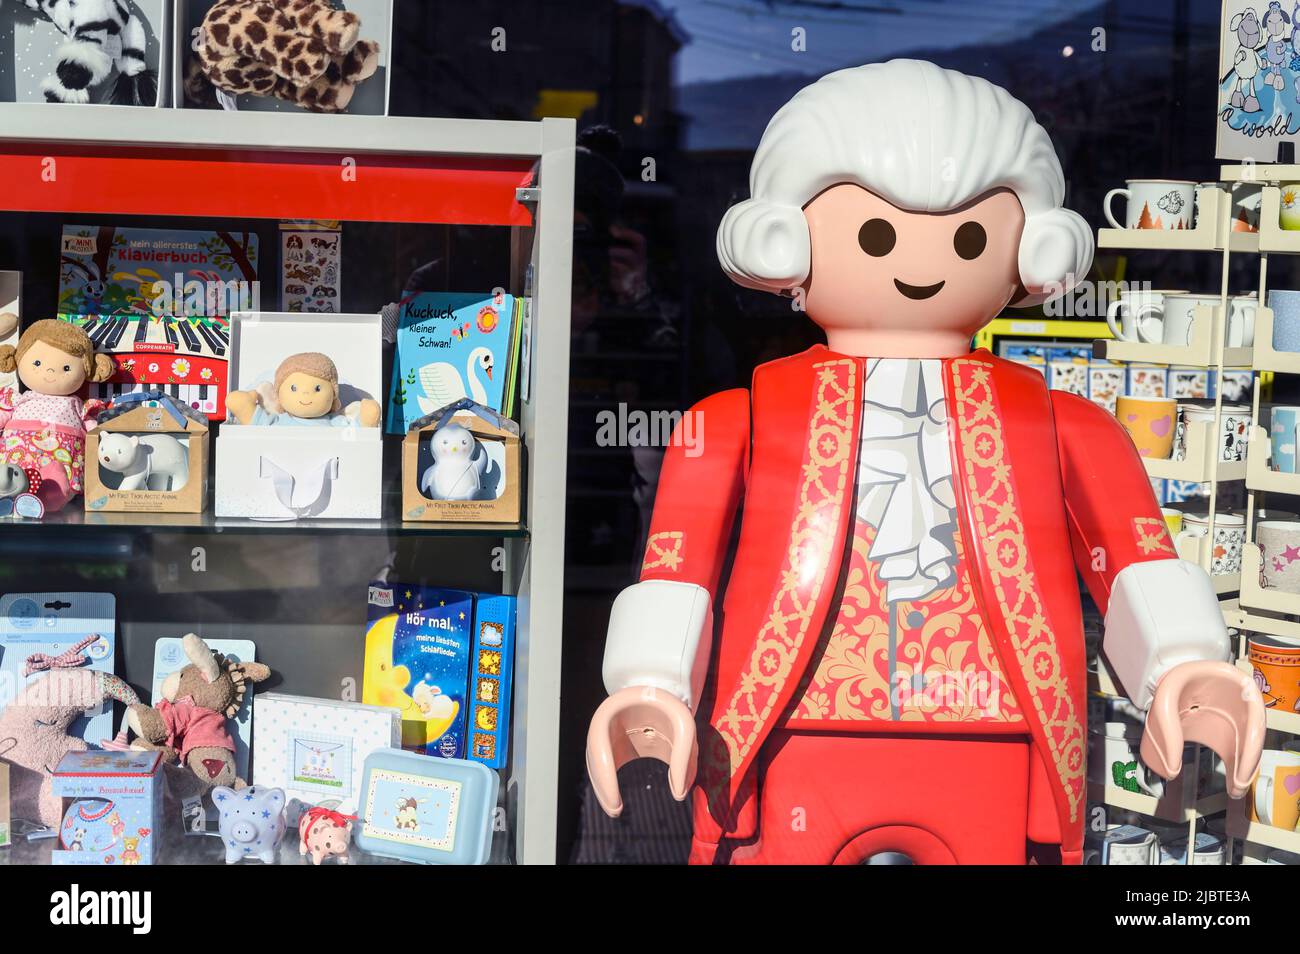 Austria, Salzburg, showcase shop with Playmobil Mozart Stock Photo - Alamy